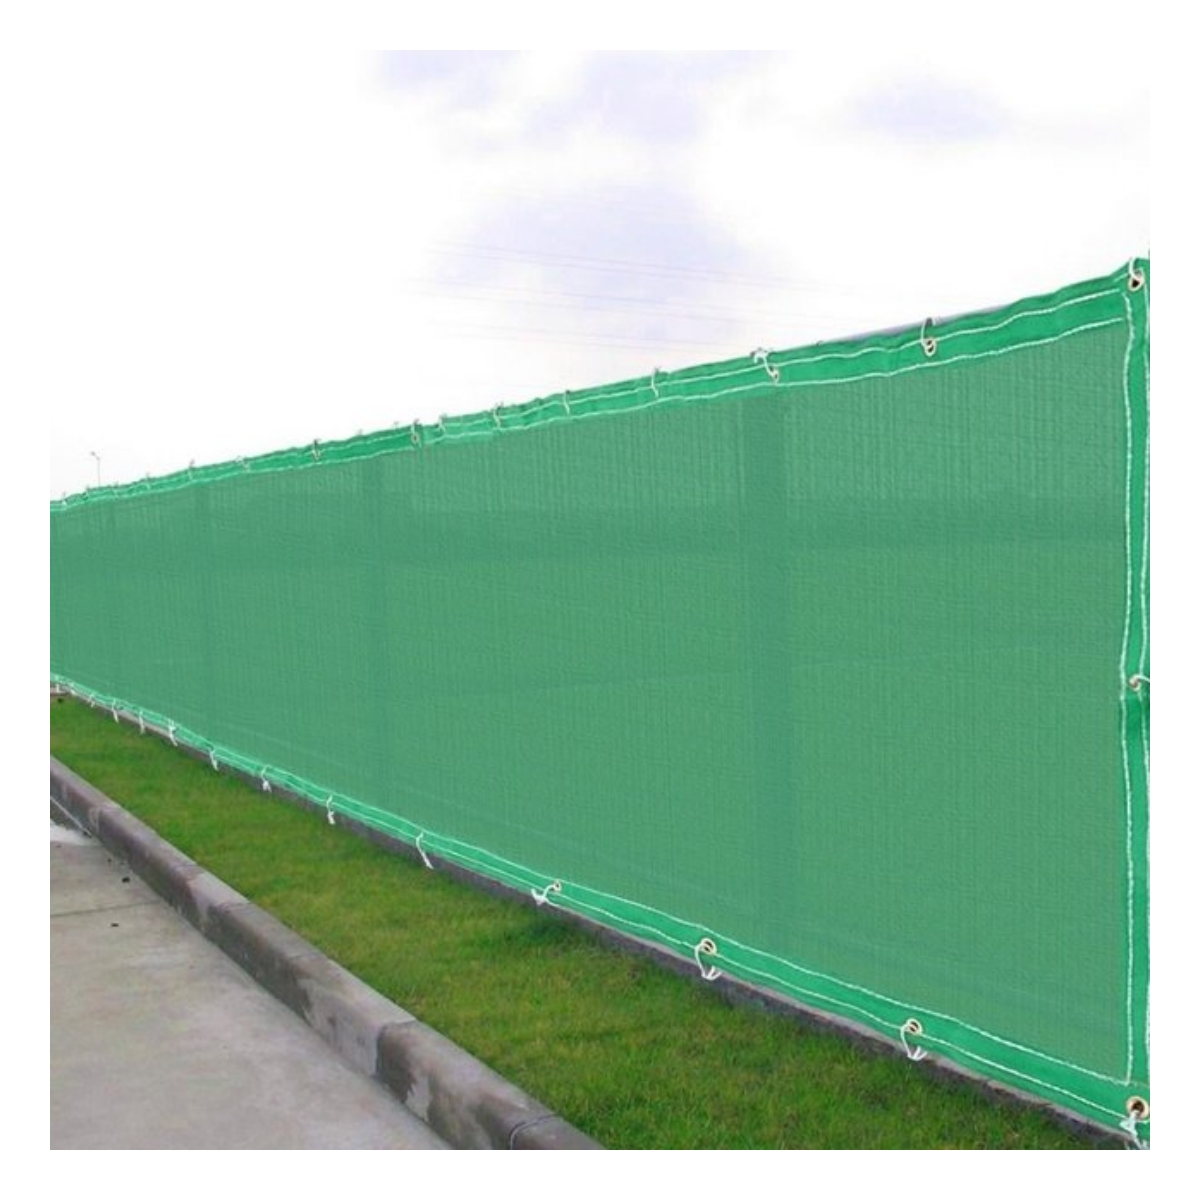 Rafia Cubrecerco Plástico Verde 1.5 x 1 M con Ojal